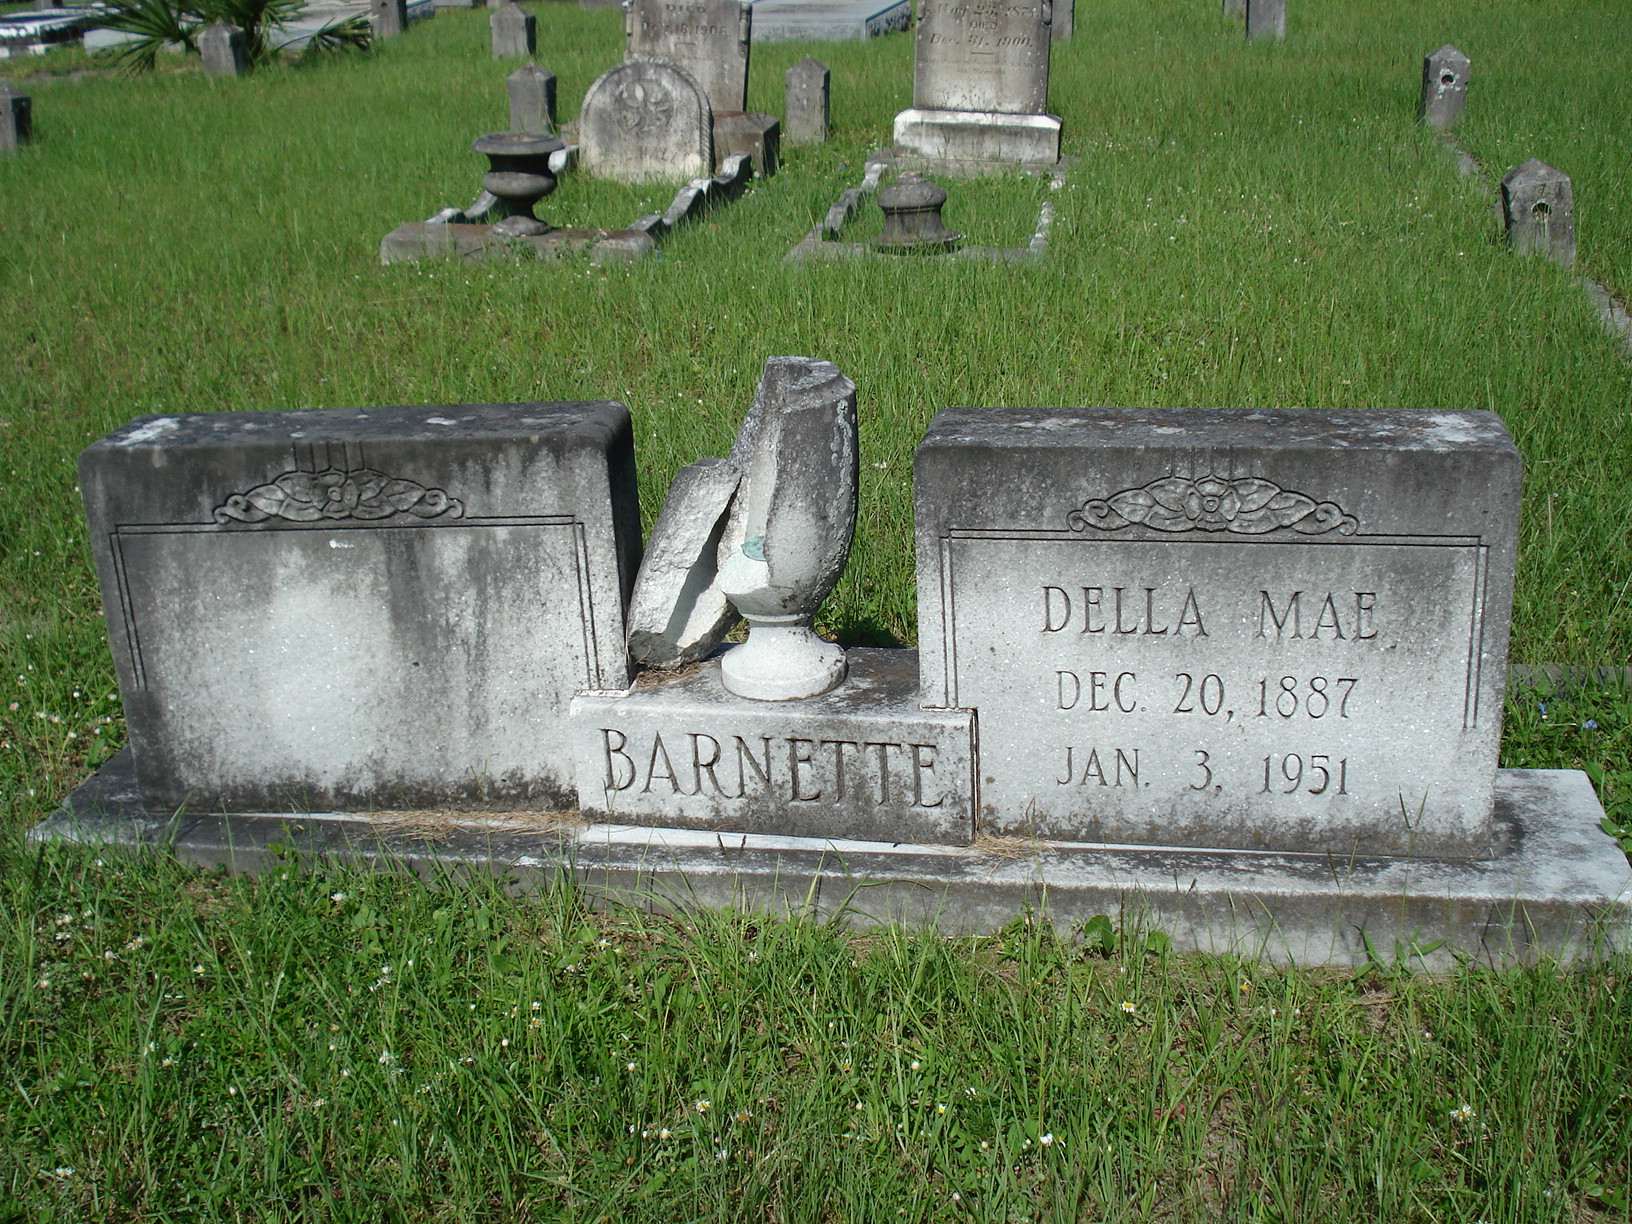 Della Mae Barnette